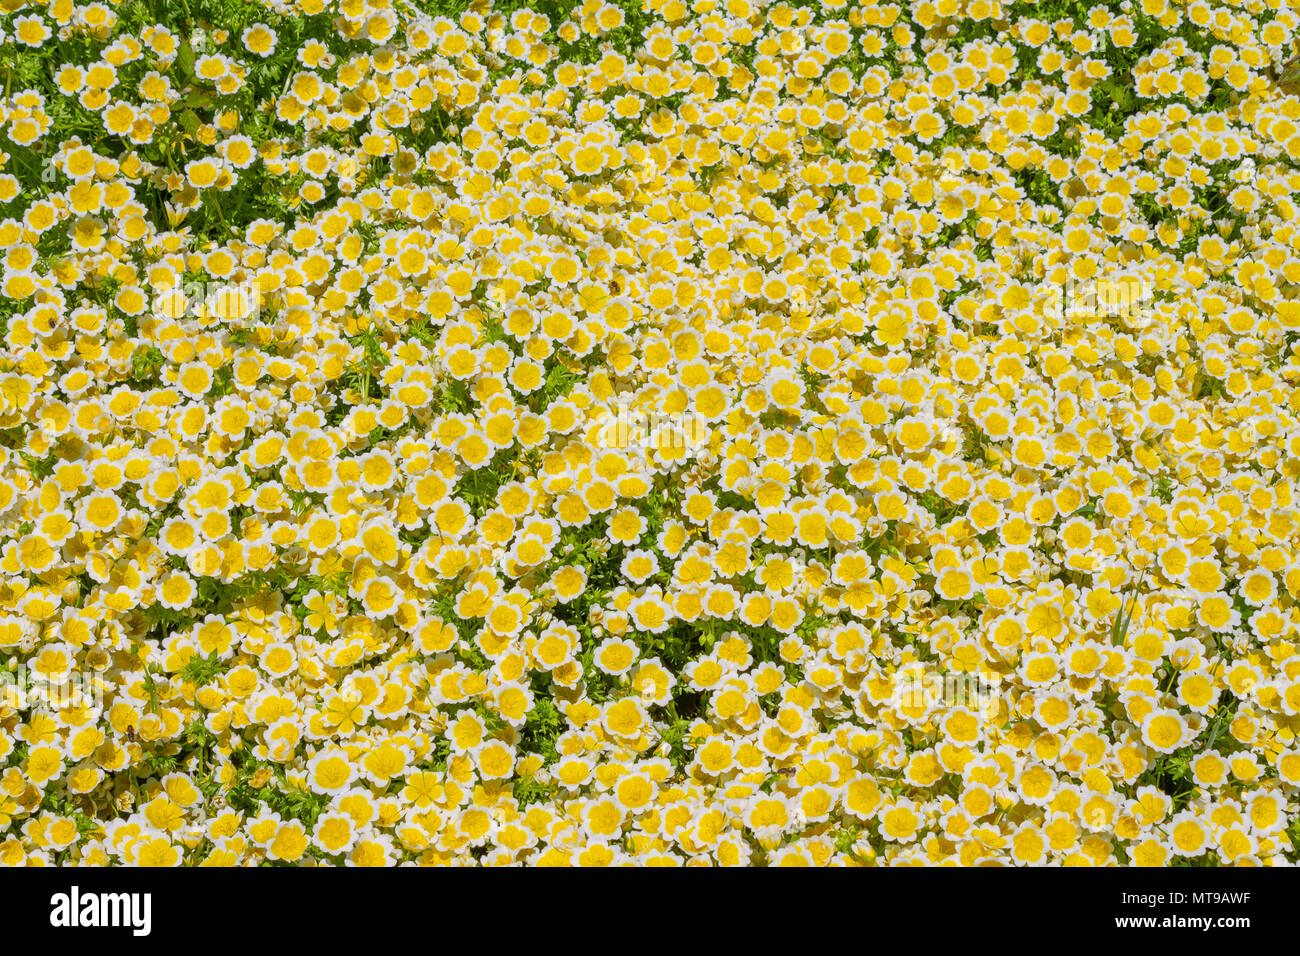 Œufs pochés Limnanthes douglasii plantes, couvrant le sol en bouquets denses de jaune et fleurs blanches au début de l'été. Banque D'Images